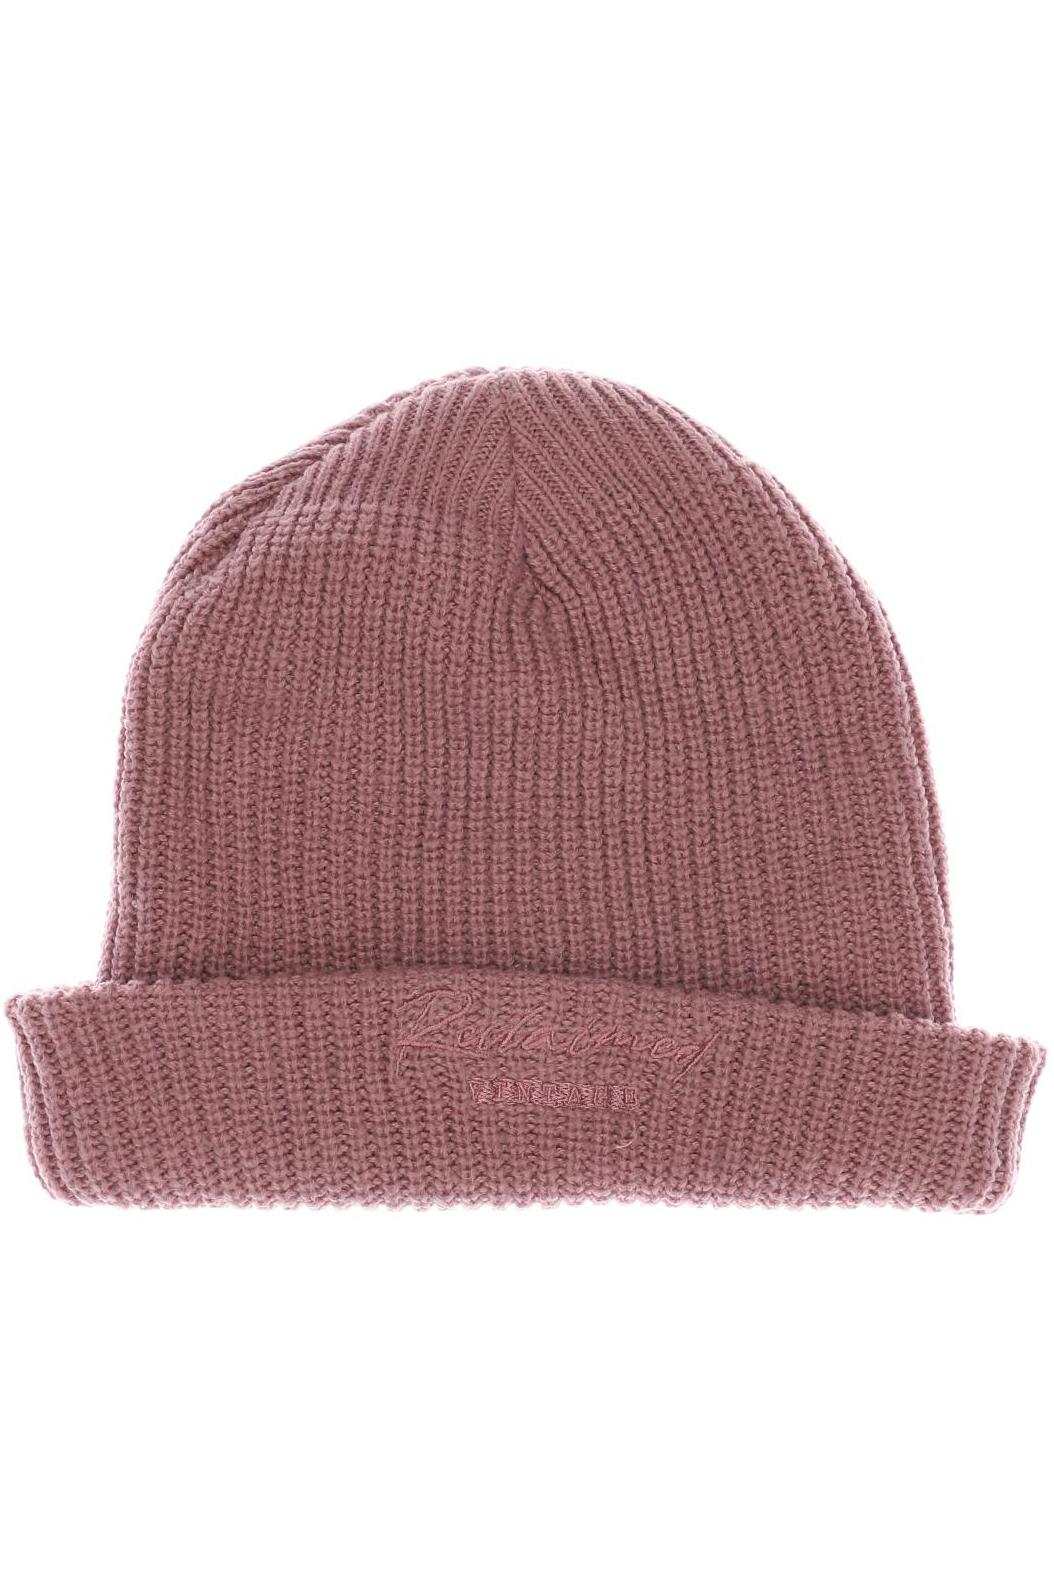 asos Damen Hut/Mütze, pink von asos